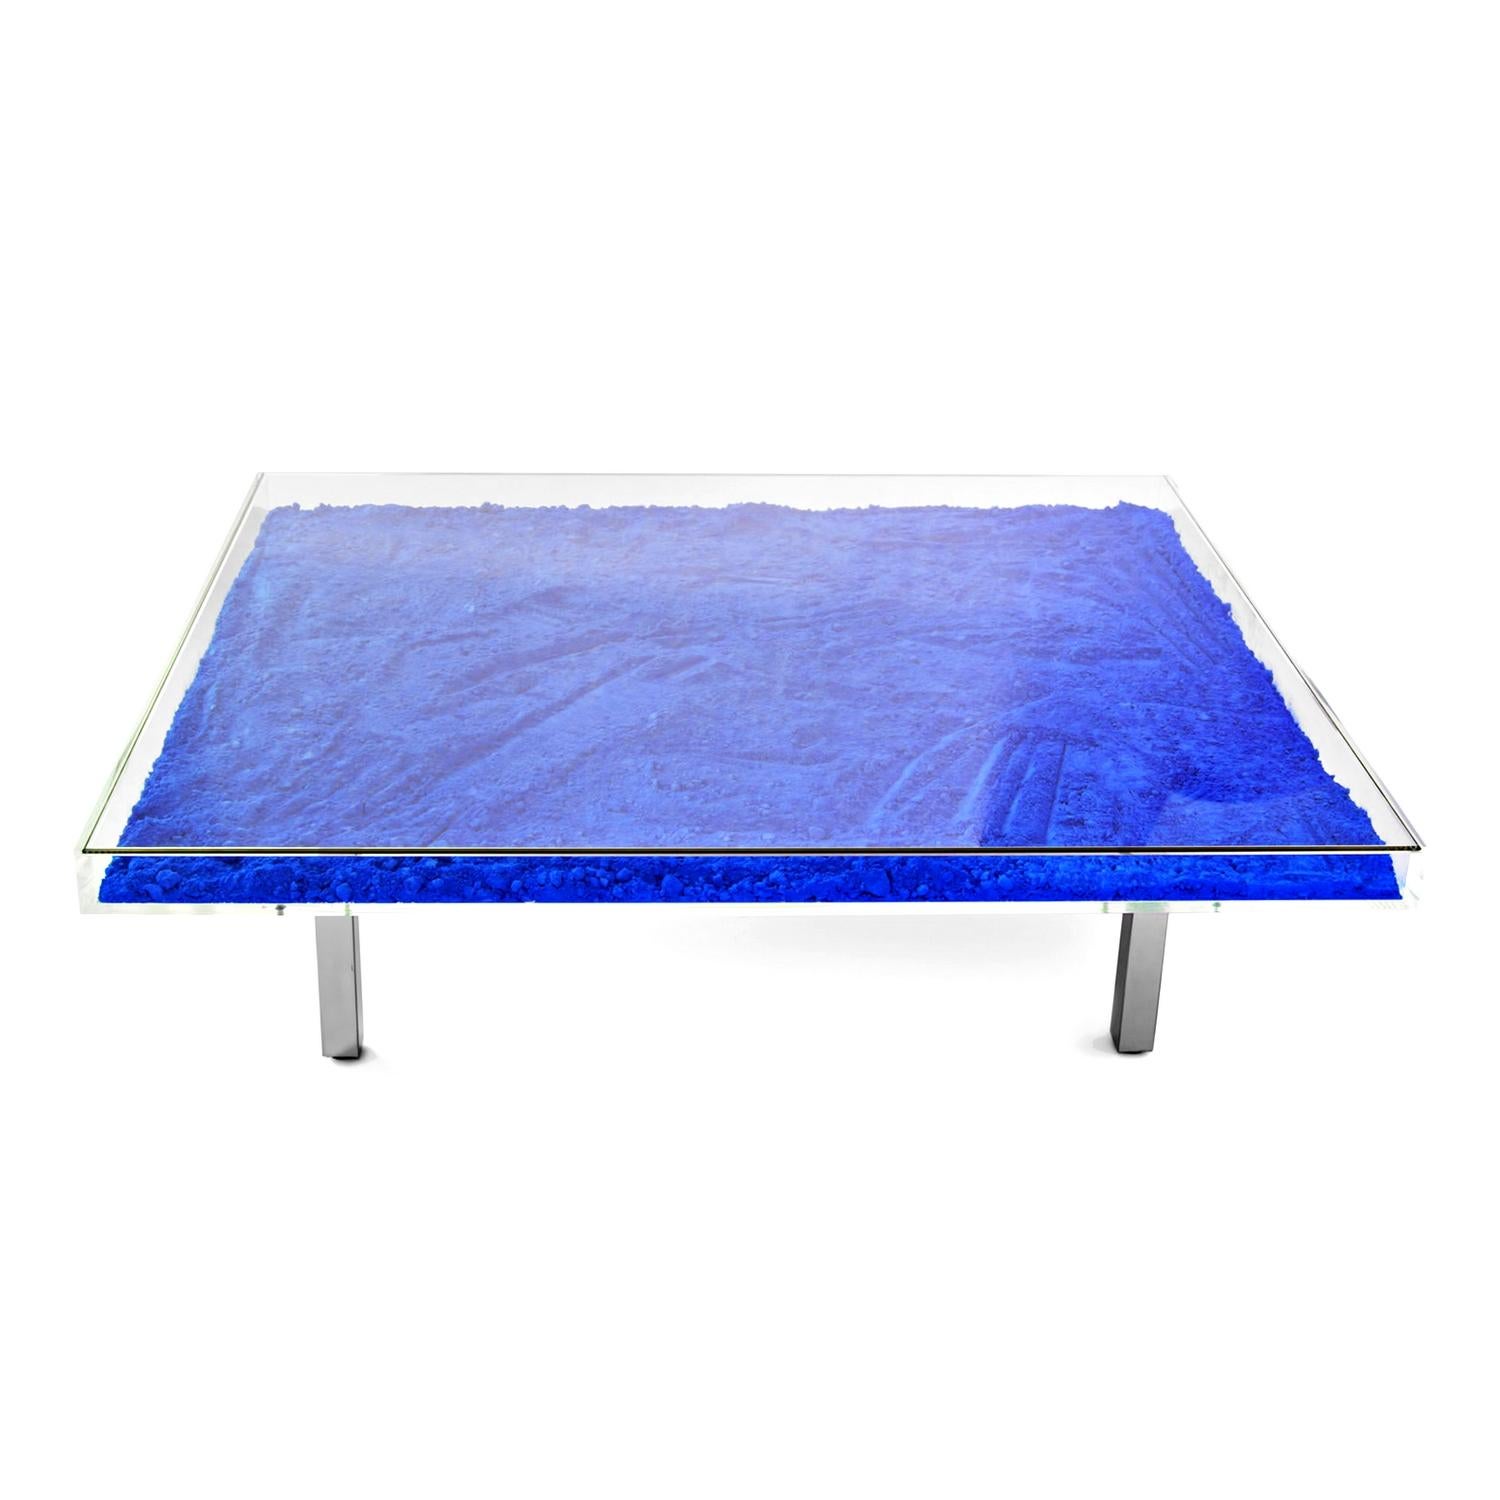 yves klein blue table